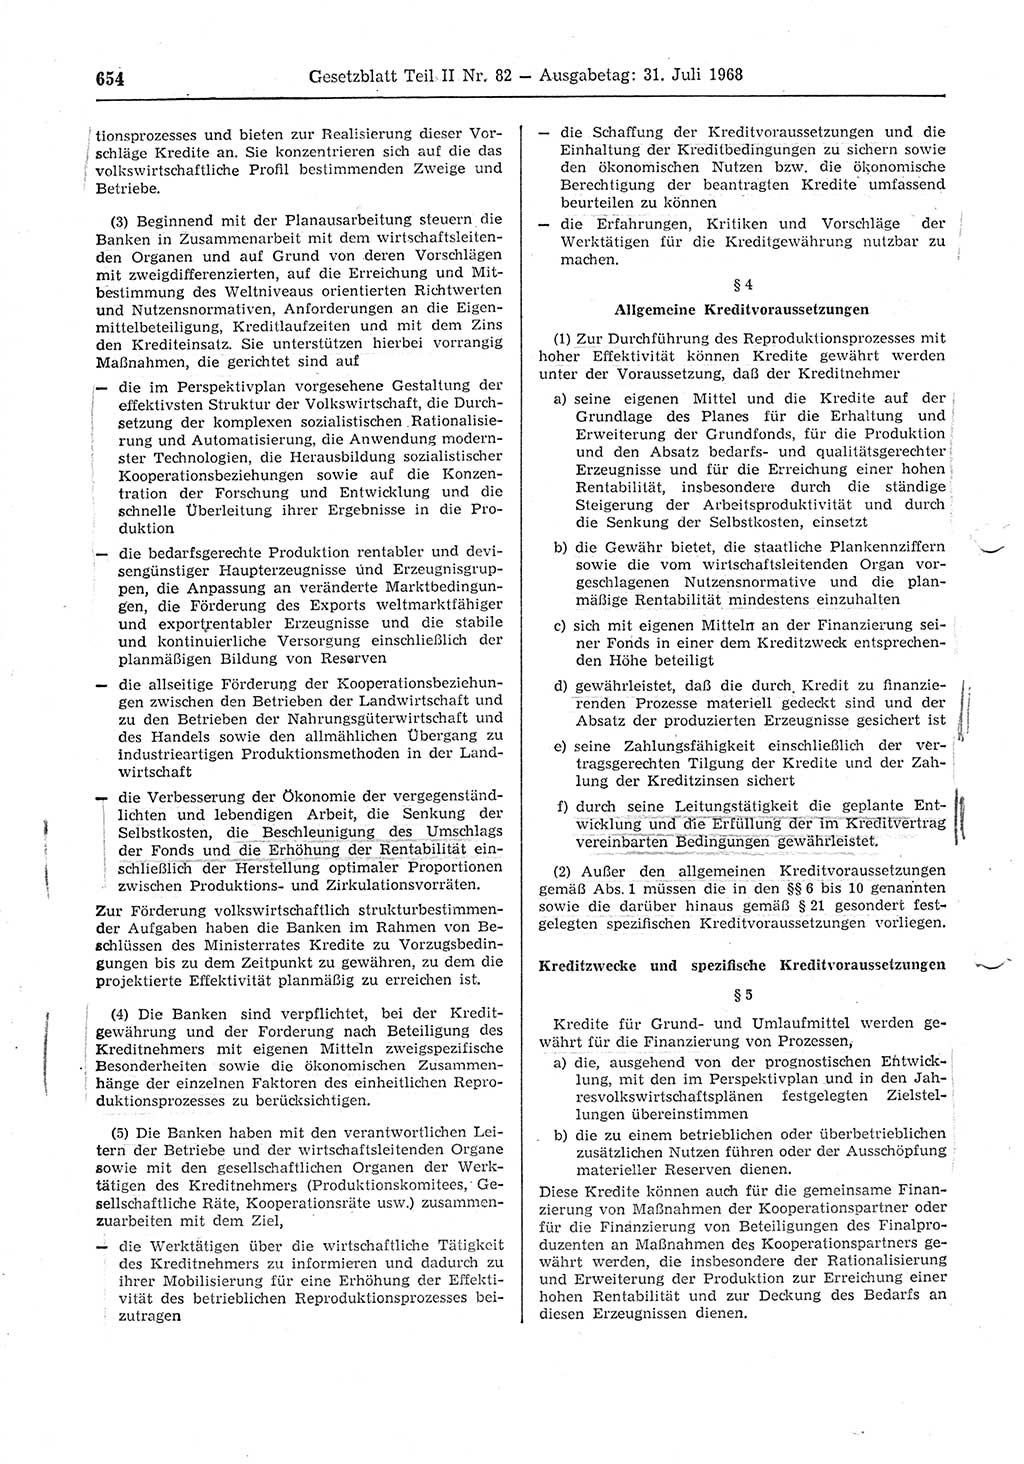 Gesetzblatt (GBl.) der Deutschen Demokratischen Republik (DDR) Teil ⅠⅠ 1968, Seite 654 (GBl. DDR ⅠⅠ 1968, S. 654)